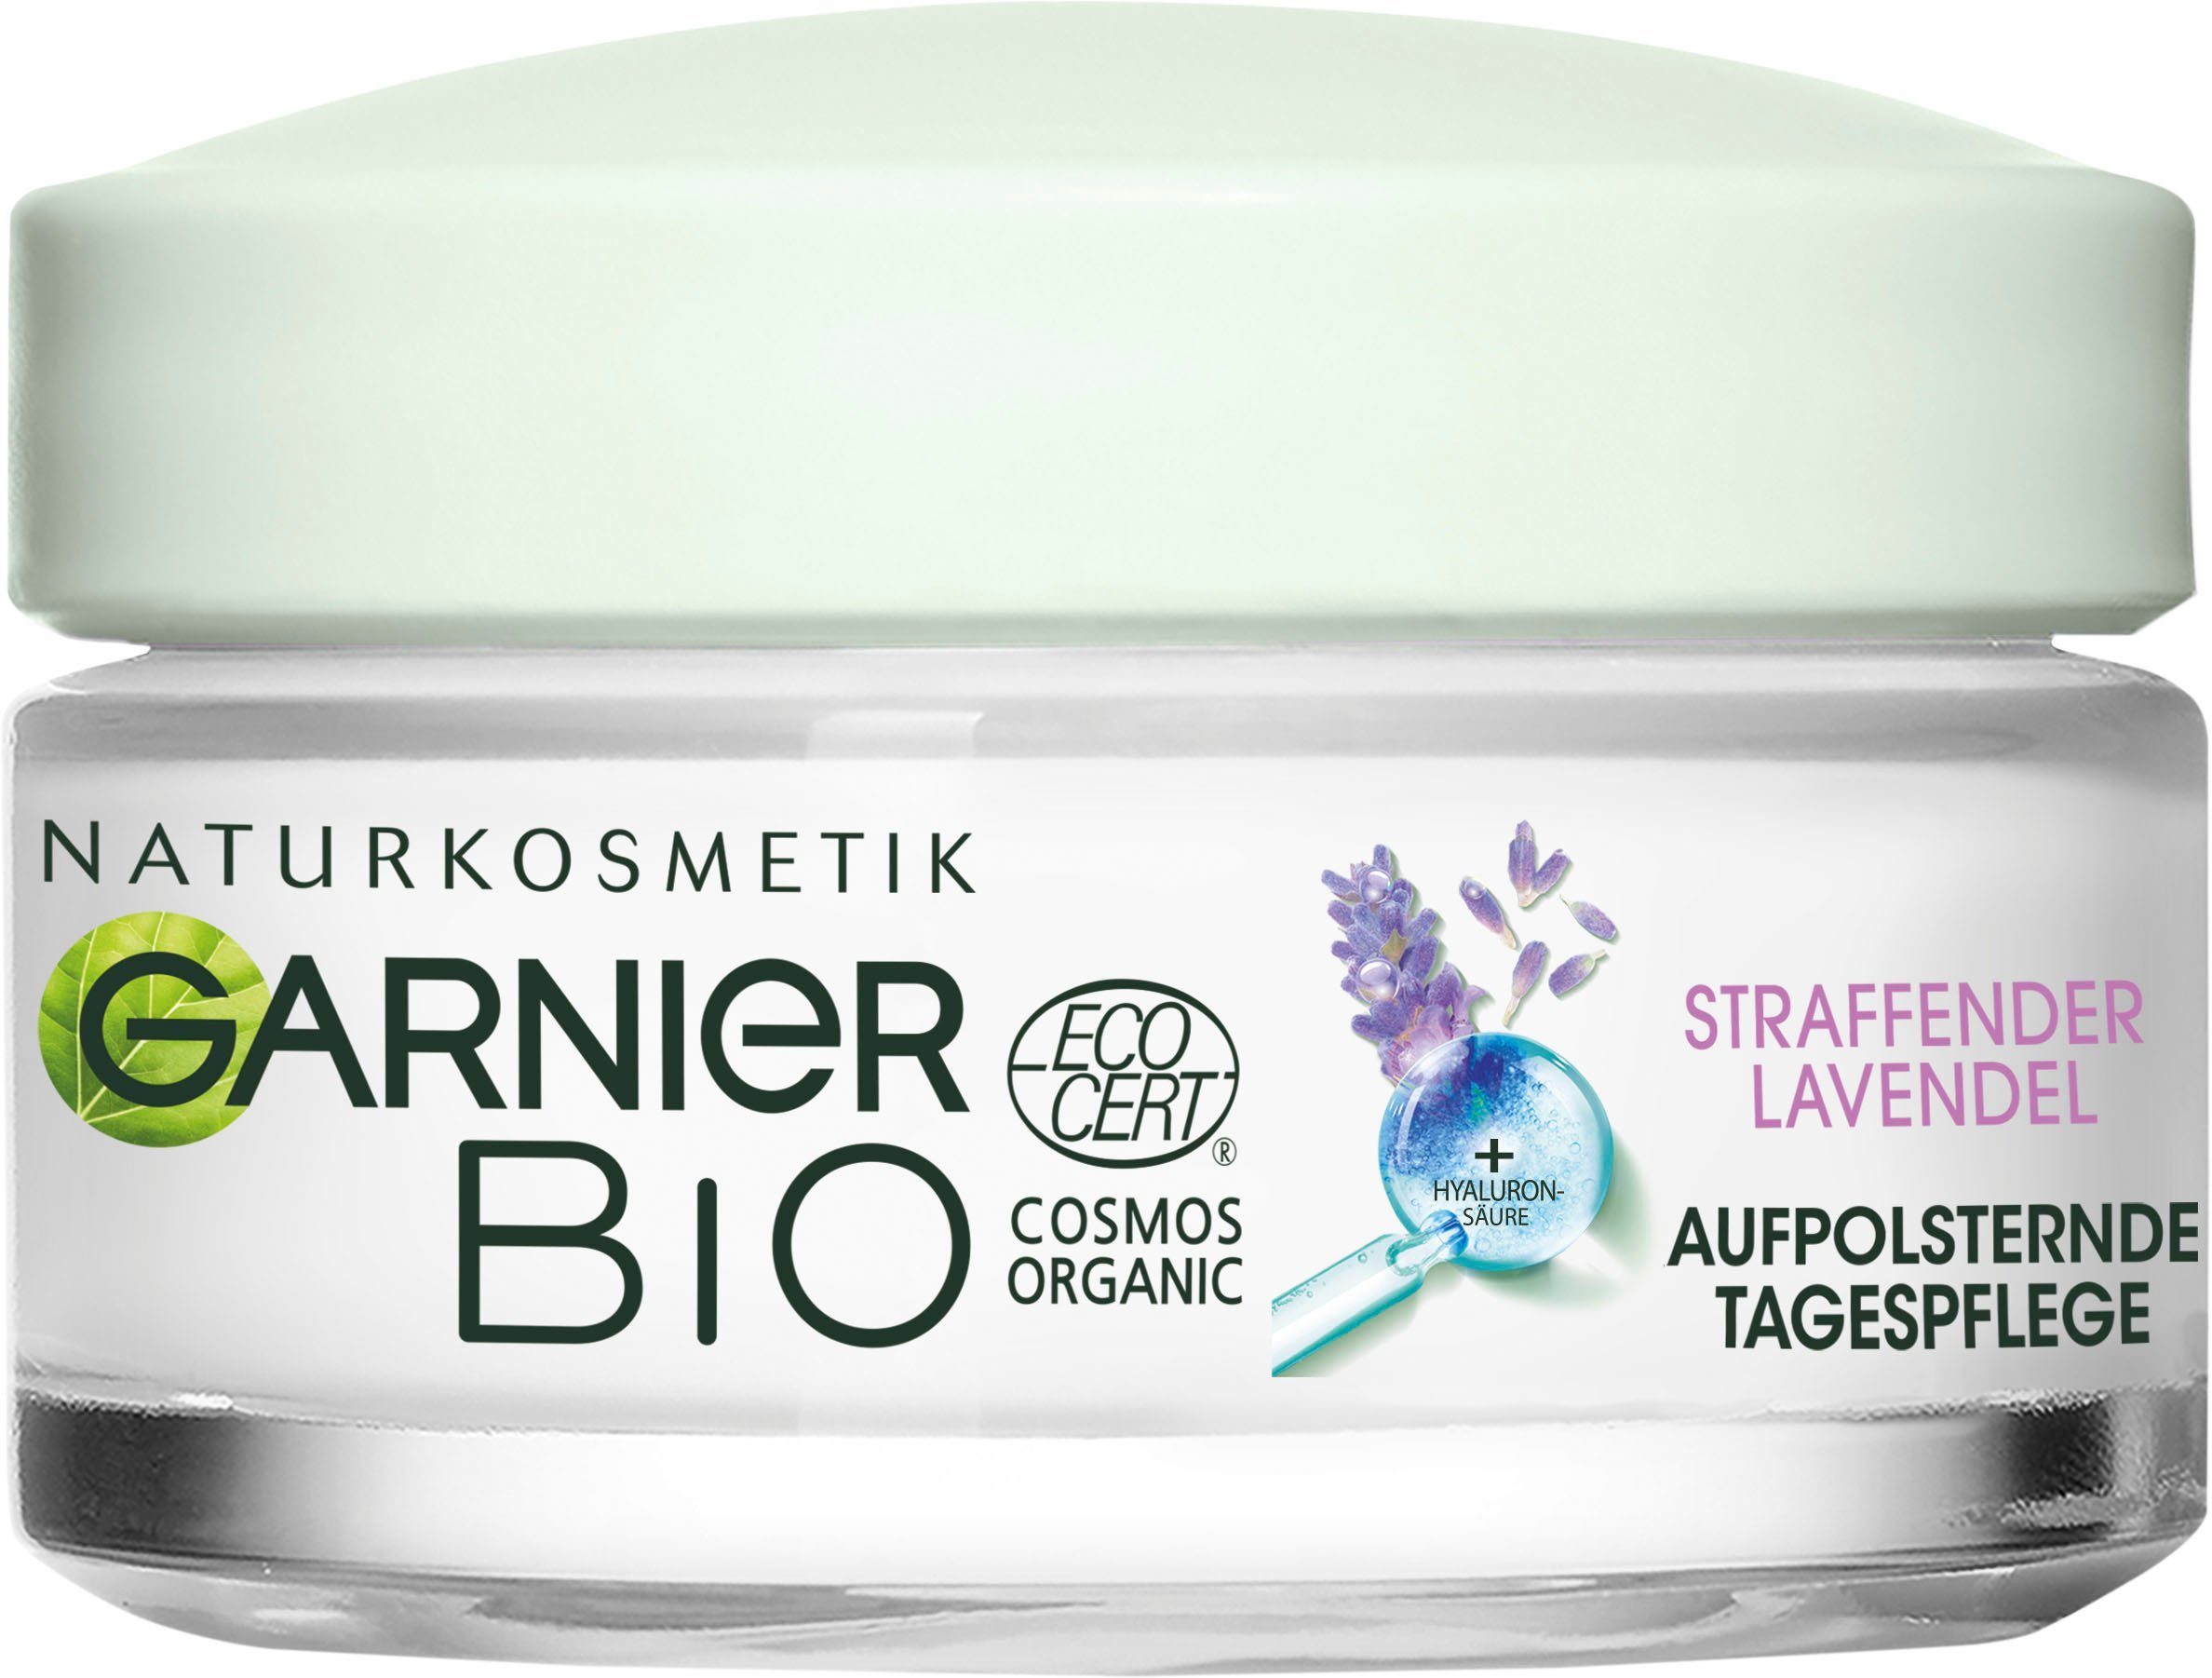 GARNIER Anti-Aging-Creme »Bio Lavendel«, Reduziert Falten und mildert feine  Linien im Gesicht online kaufen | OTTO